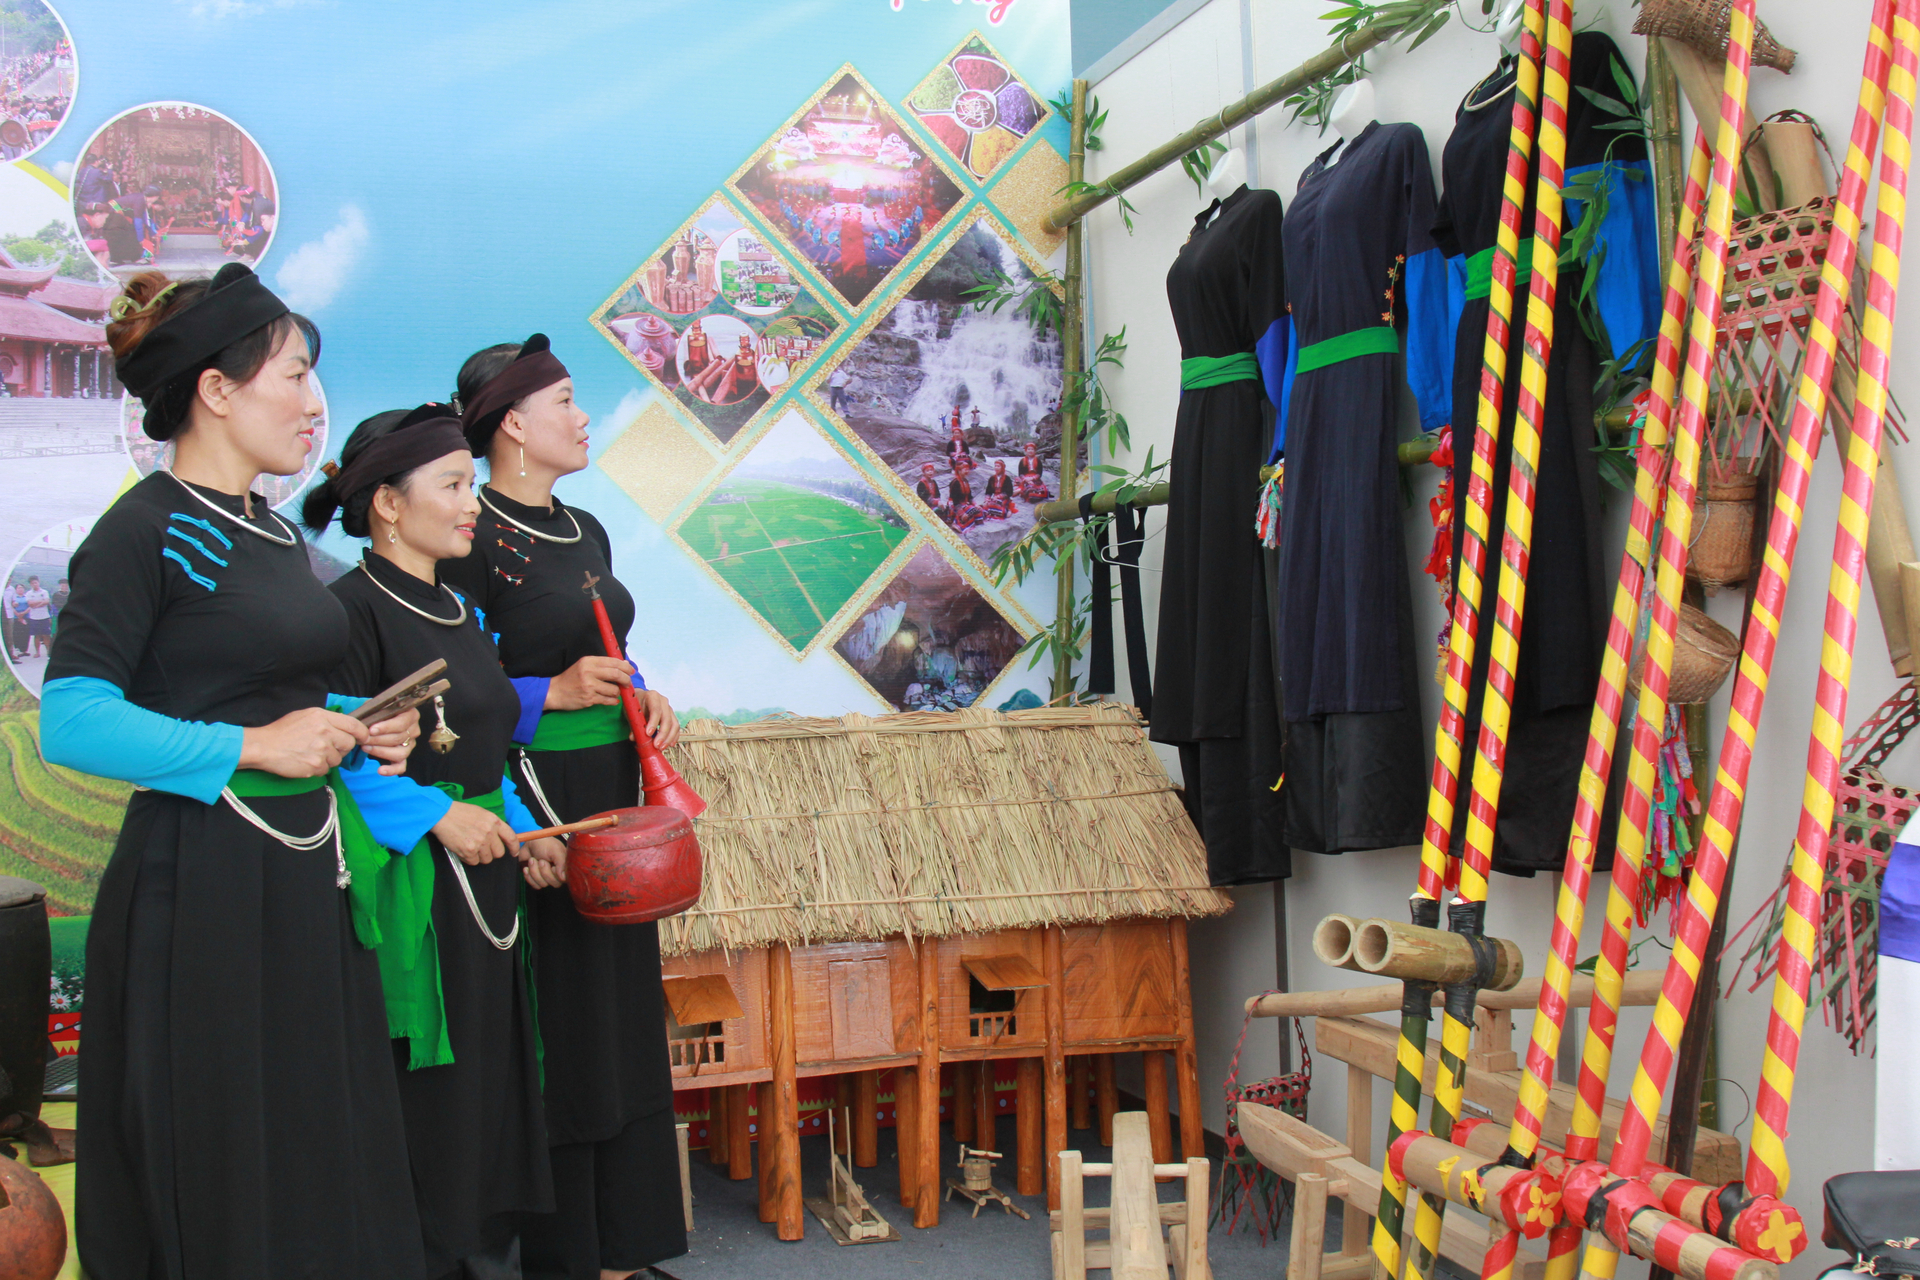 Người dân tộc Tày huyện Văn Yên (Yên Bái) với nếp nhà sàn truyền thống và các trang phục, nhạc cụ dân tộc truyền thống được trưng bày tại không gian văn hóa.